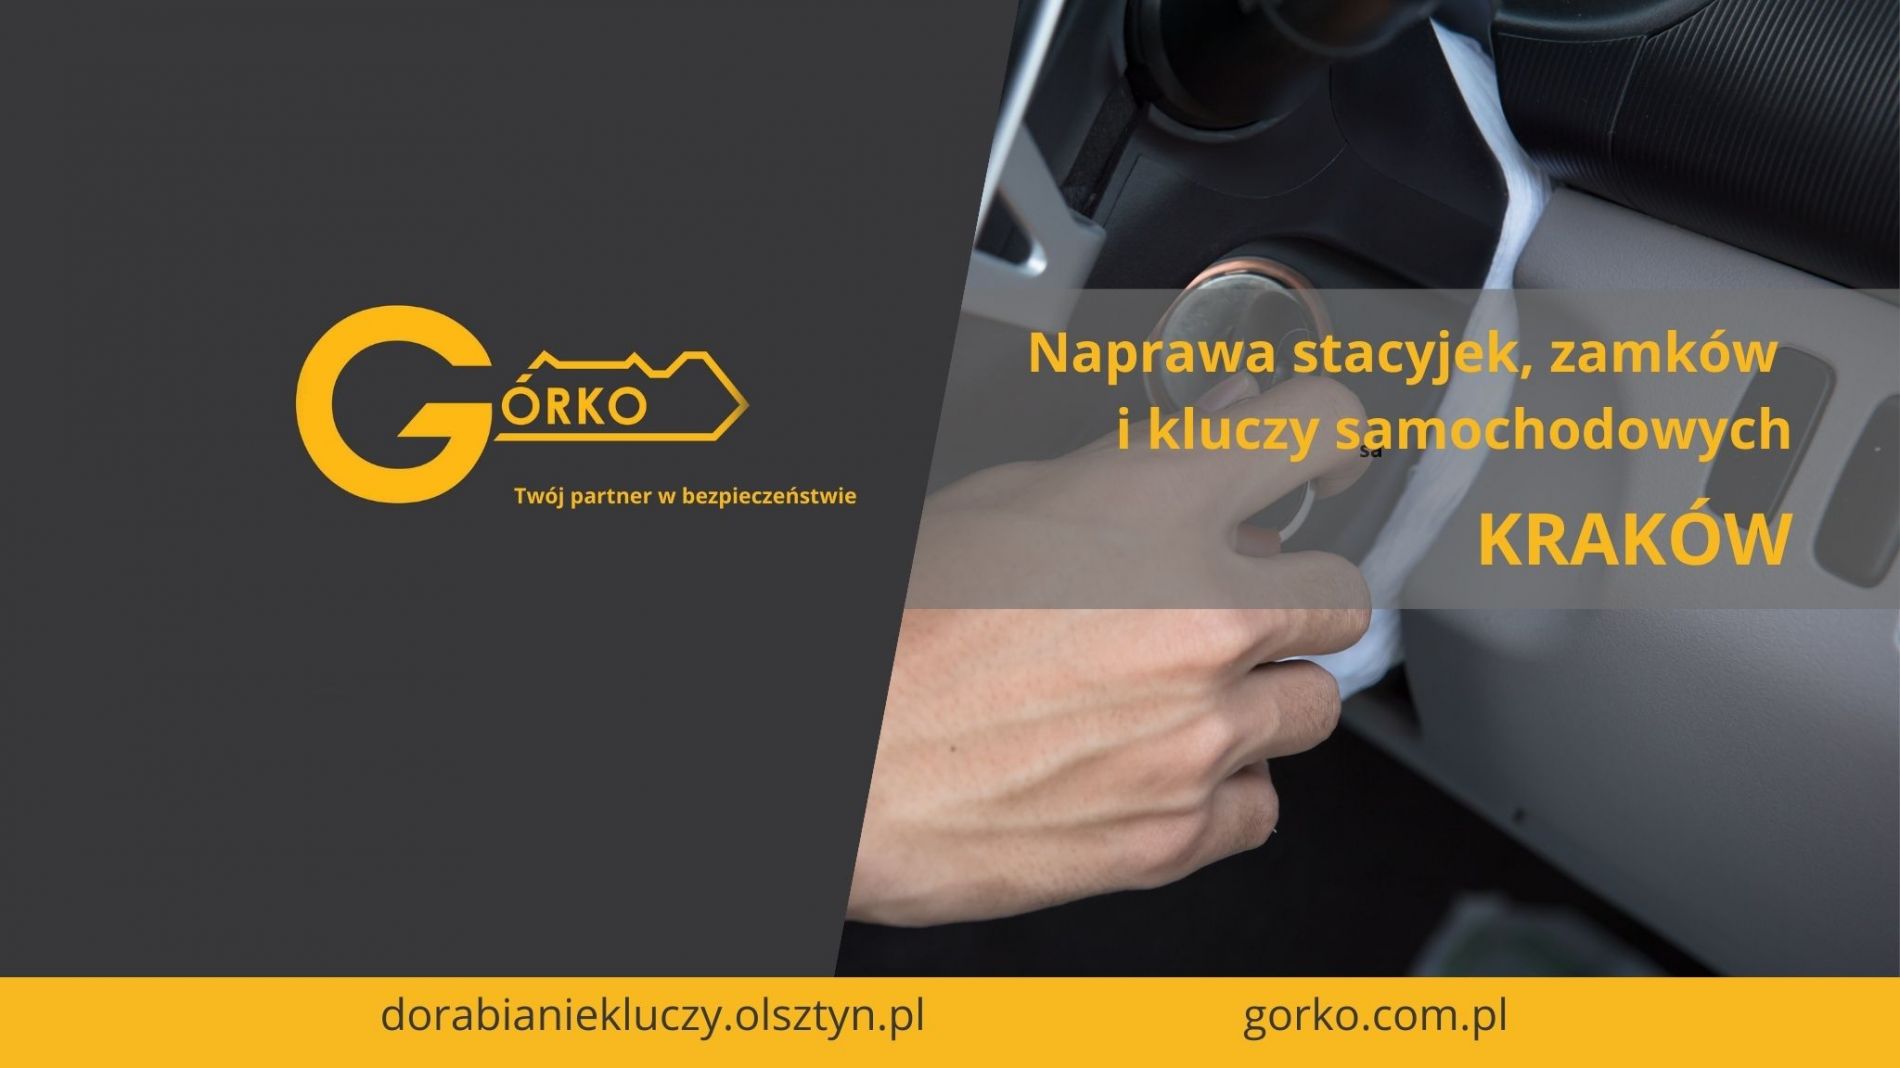 Naprawa stacyjek, zamków i kluczy samochodowych – Kraków (Usługa zdalna)